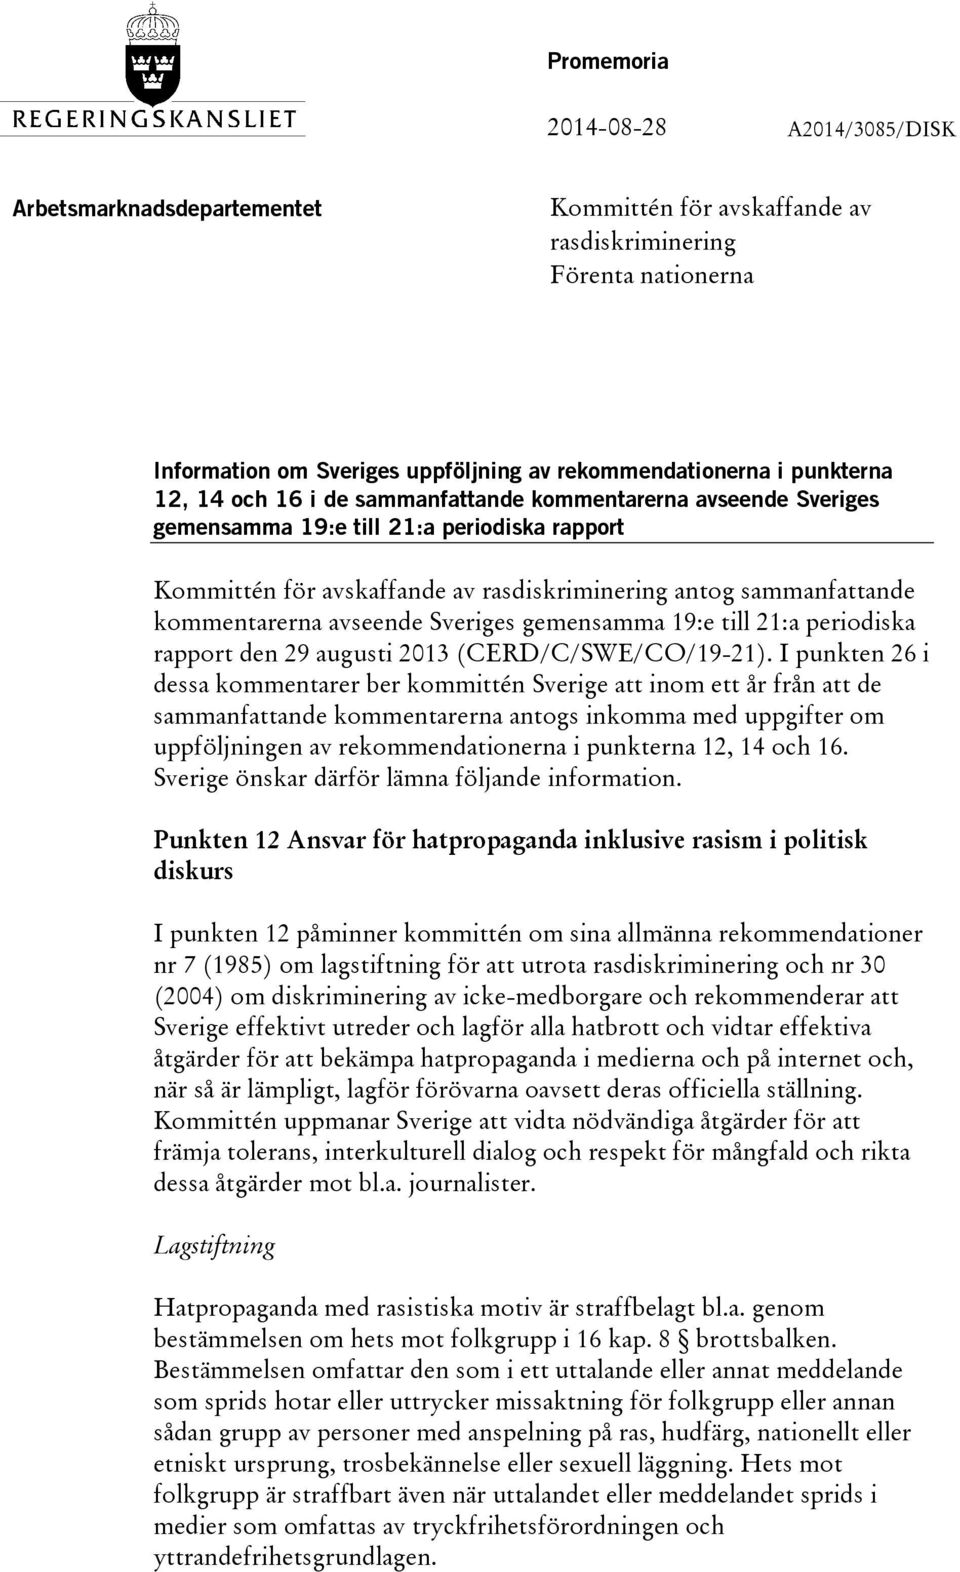 kommentarerna avseende Sveriges gemensamma 19:e till 21:a periodiska rapport den 29 augusti 2013 (CERD/C/SWE/CO/19-21).